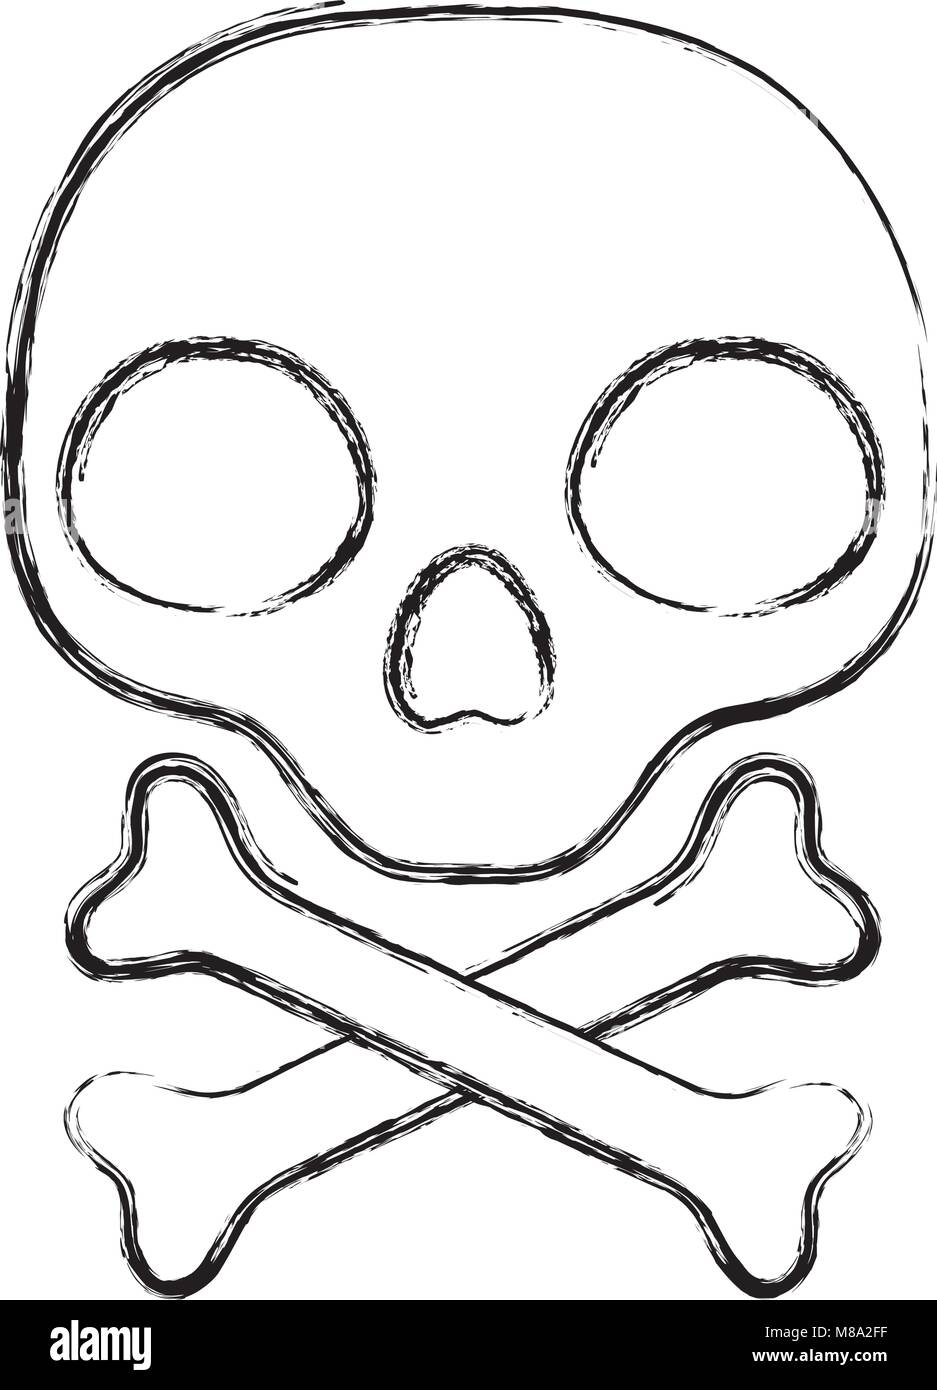 grunge warning skull and bones danger sign Stock Vector